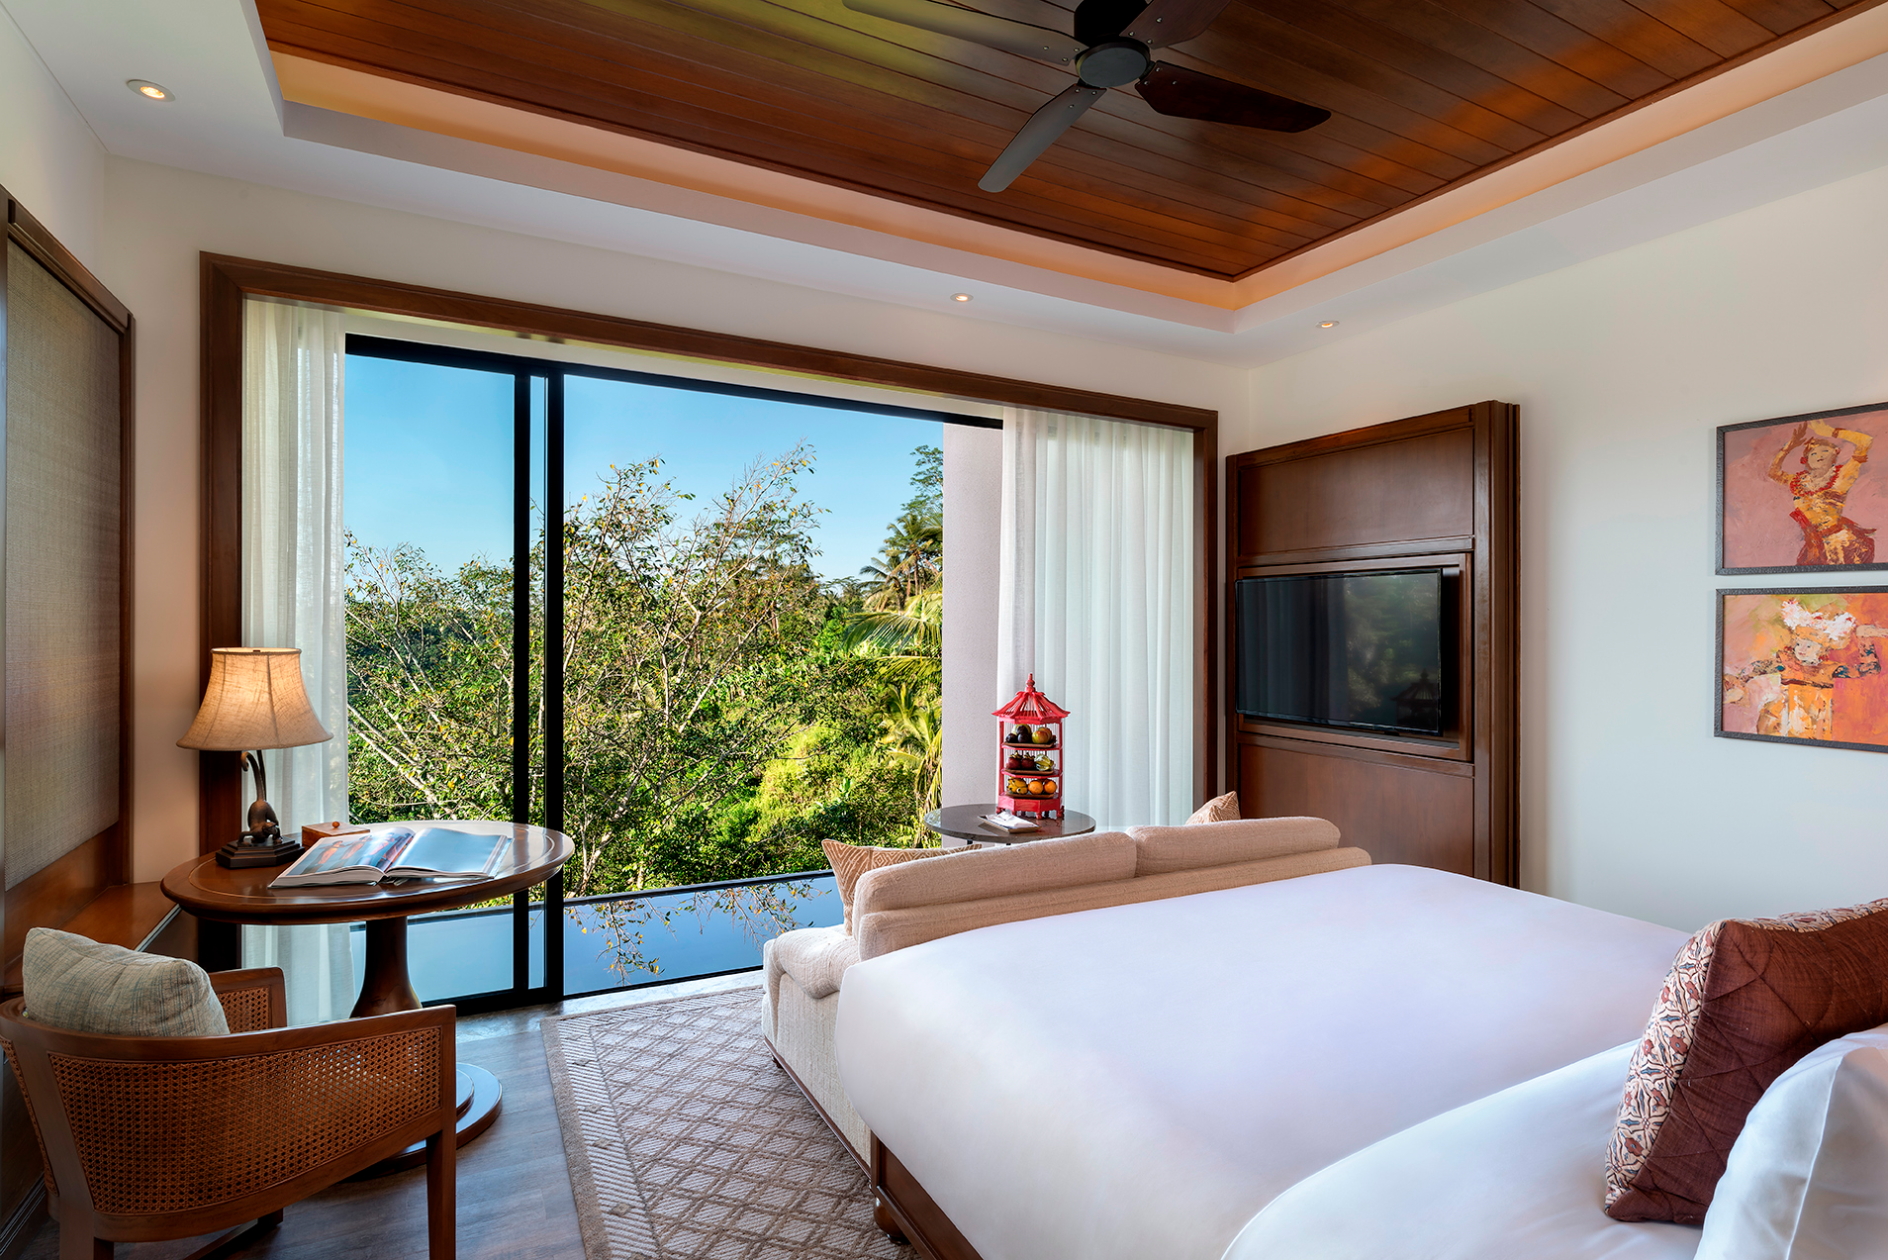 Bedroom of a villa at the Anantara Ubud Bali Resort Click to enlarge.